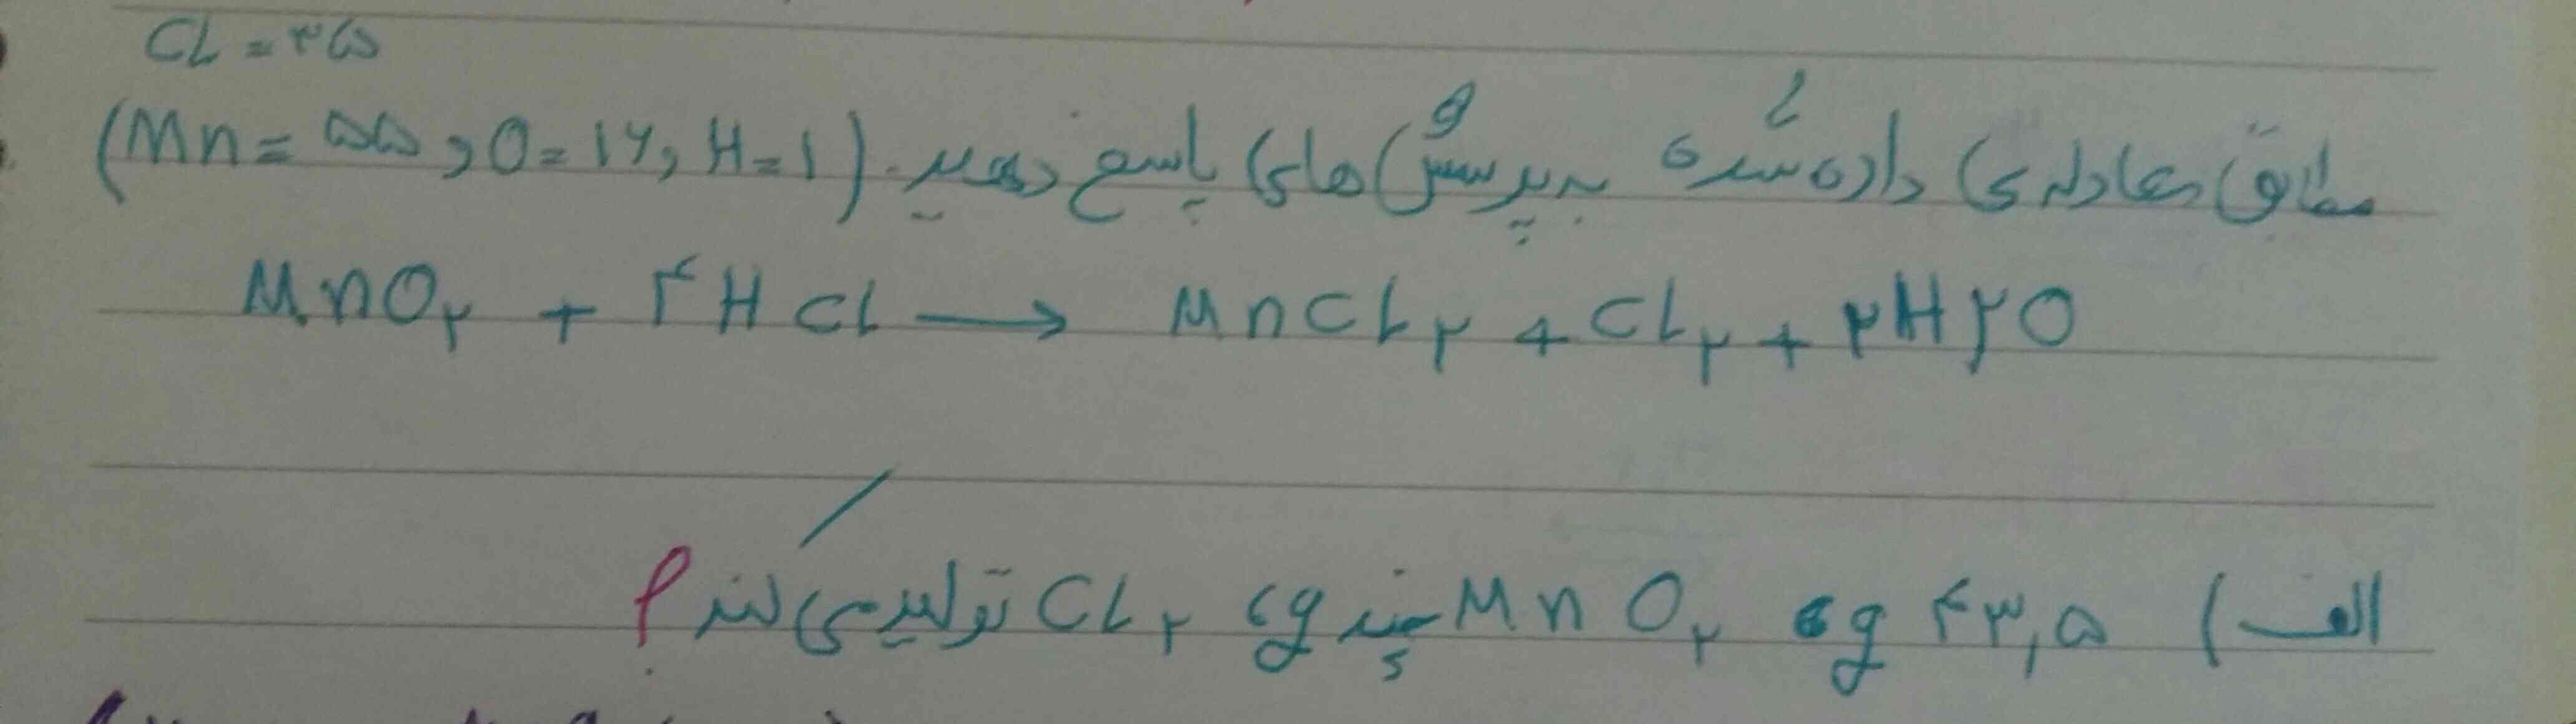 طبق معادله ی داده شده به پرسش ها پاسخ دهید
Mno2+4Hcl--->Mncl2+cl2+2H2o

الف) 43/5g Mno2چند گرم cl2تولید می کند